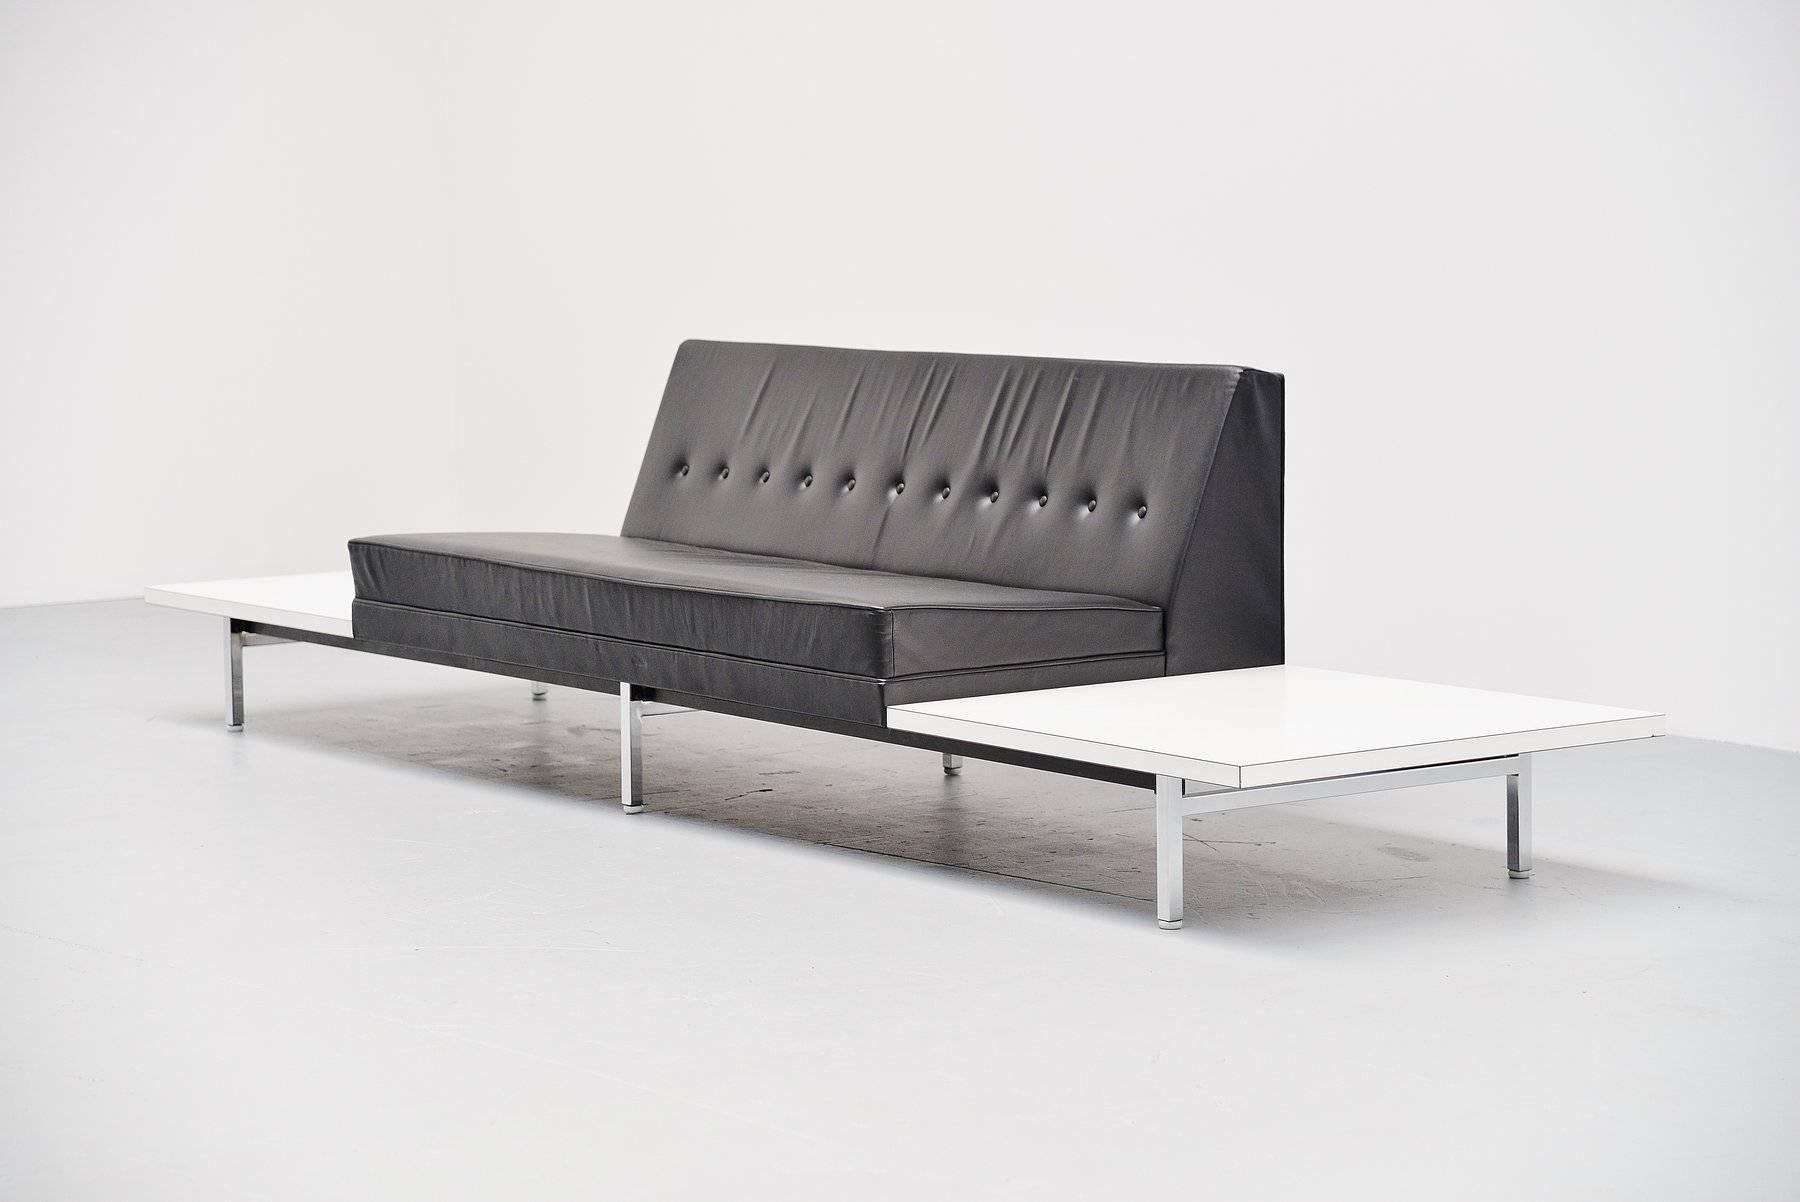 Sehr schönes Ledersofa, entworfen von George Nelson für Herman Miller, Vereinigte Staaten, 1963. Dieses Sofa hat ein Metallgestell mit quadratischen verchromten Beinen, die Sitzfläche ist aus schwarzem Leder und in ausgezeichnetem Originalzustand.